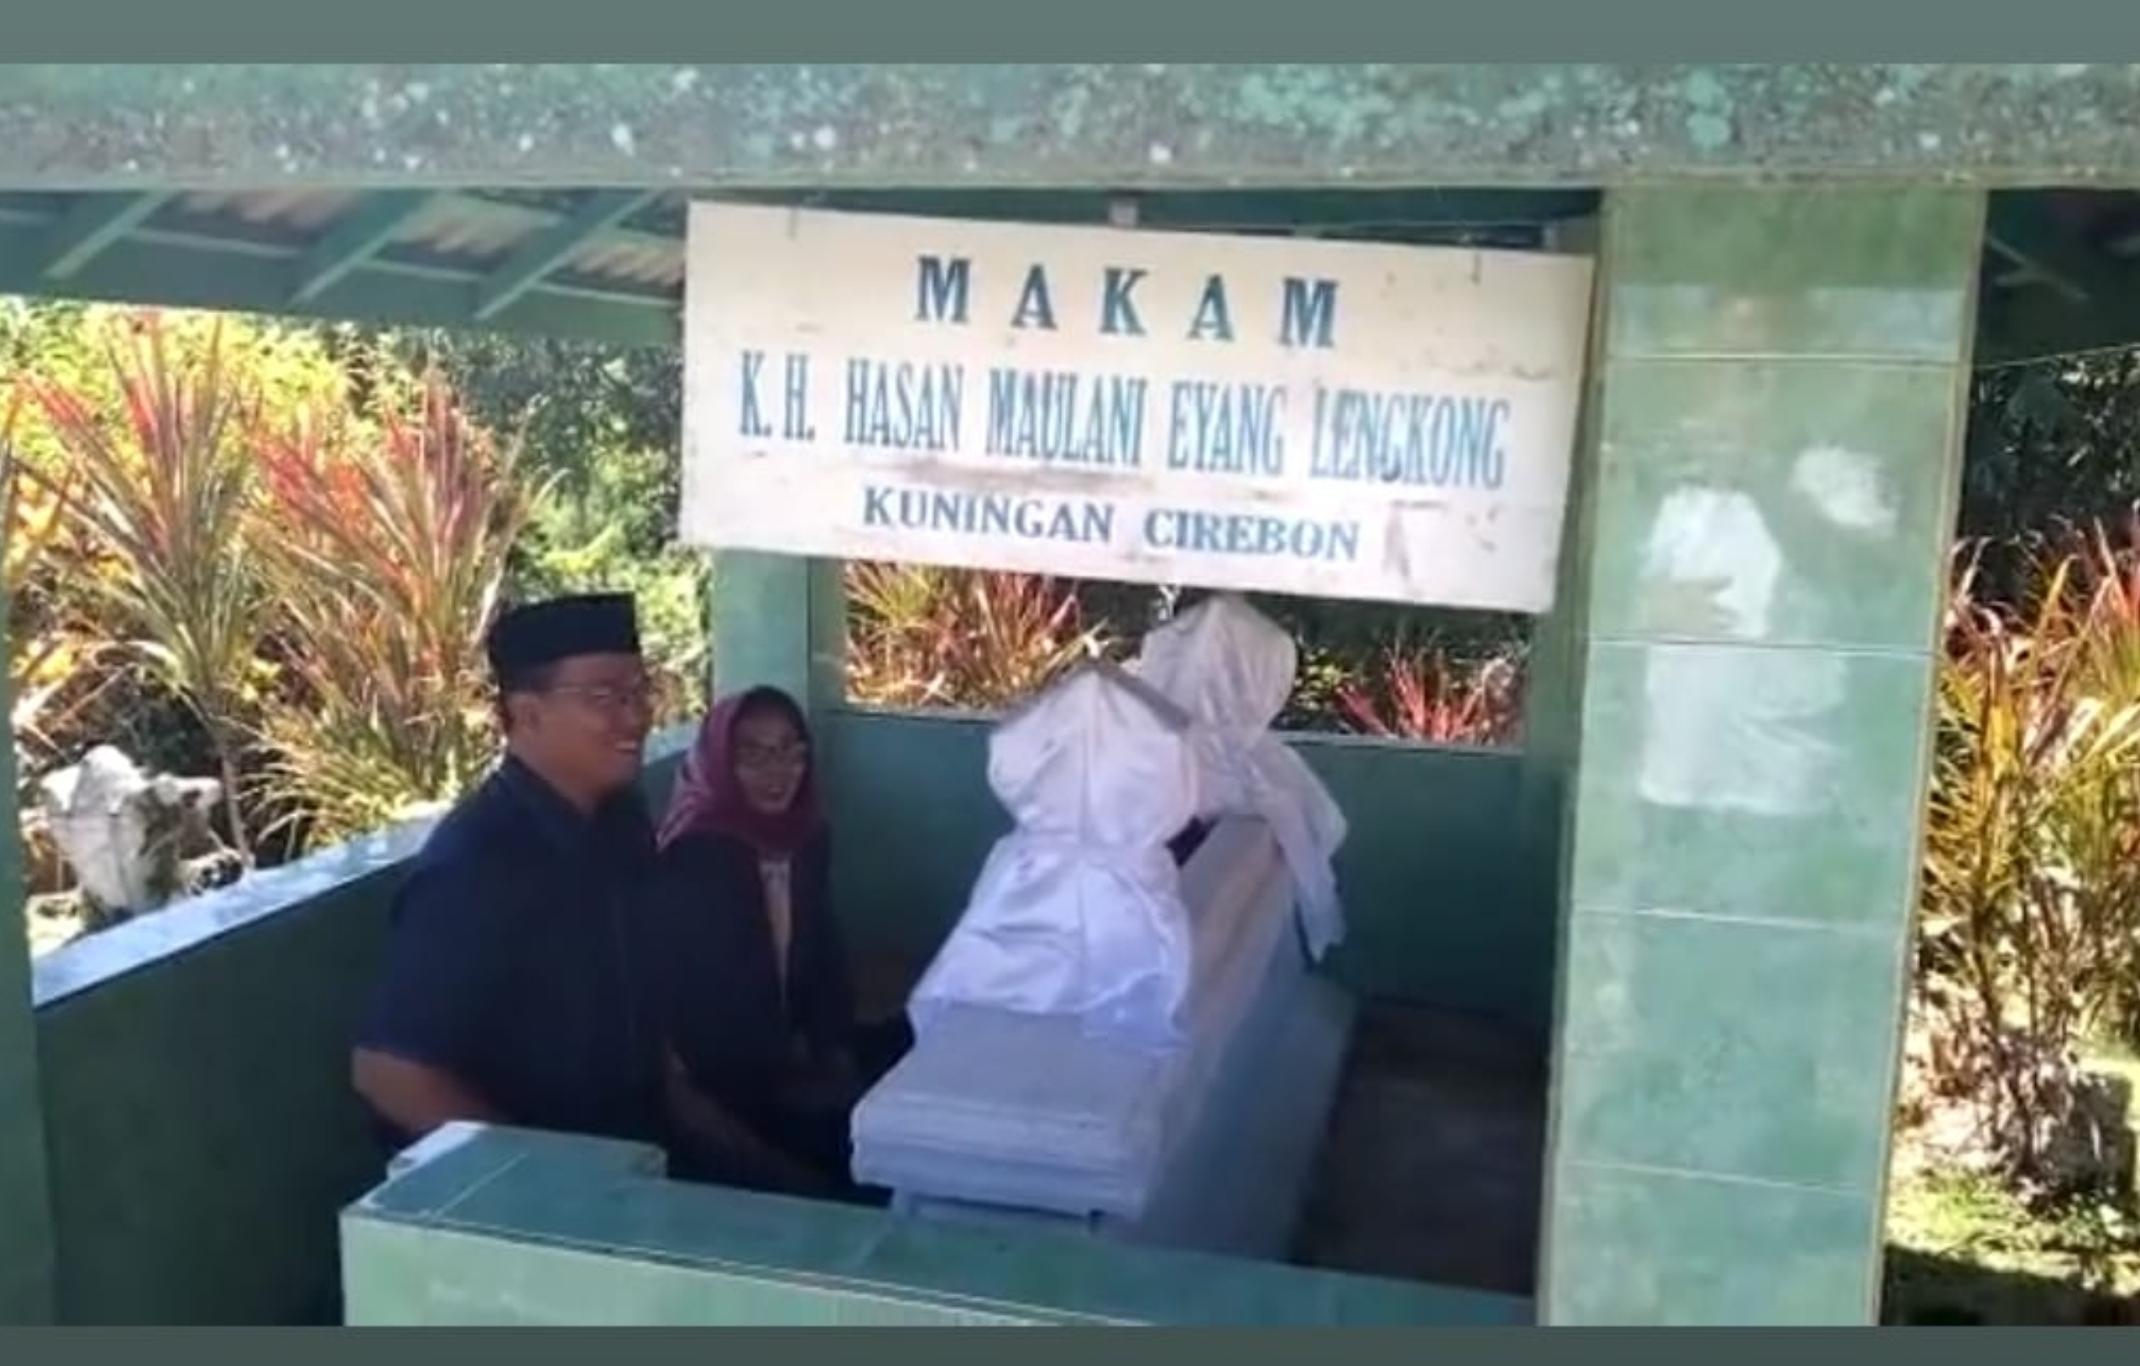 Lengkong, Desa Tertua di Kuningan Ini, Identik dengan Eyang Manado, Peninggalan Hasan Maolani Masih Terawat